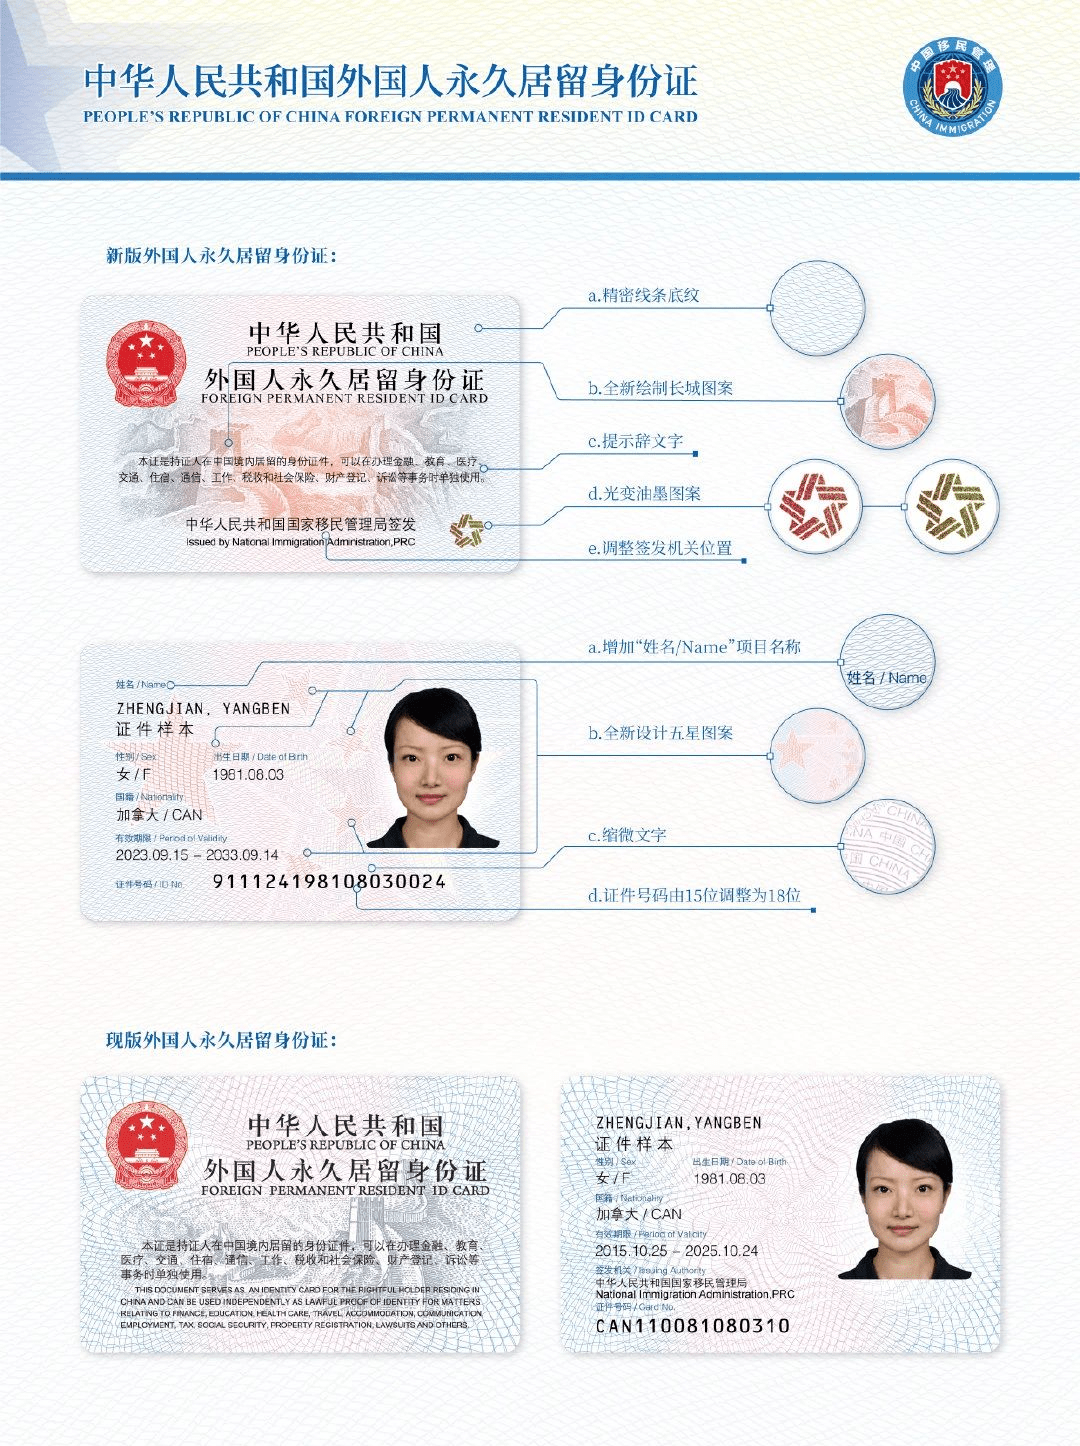 新版外国人永久居留身份证发布!12月1日正式启用!